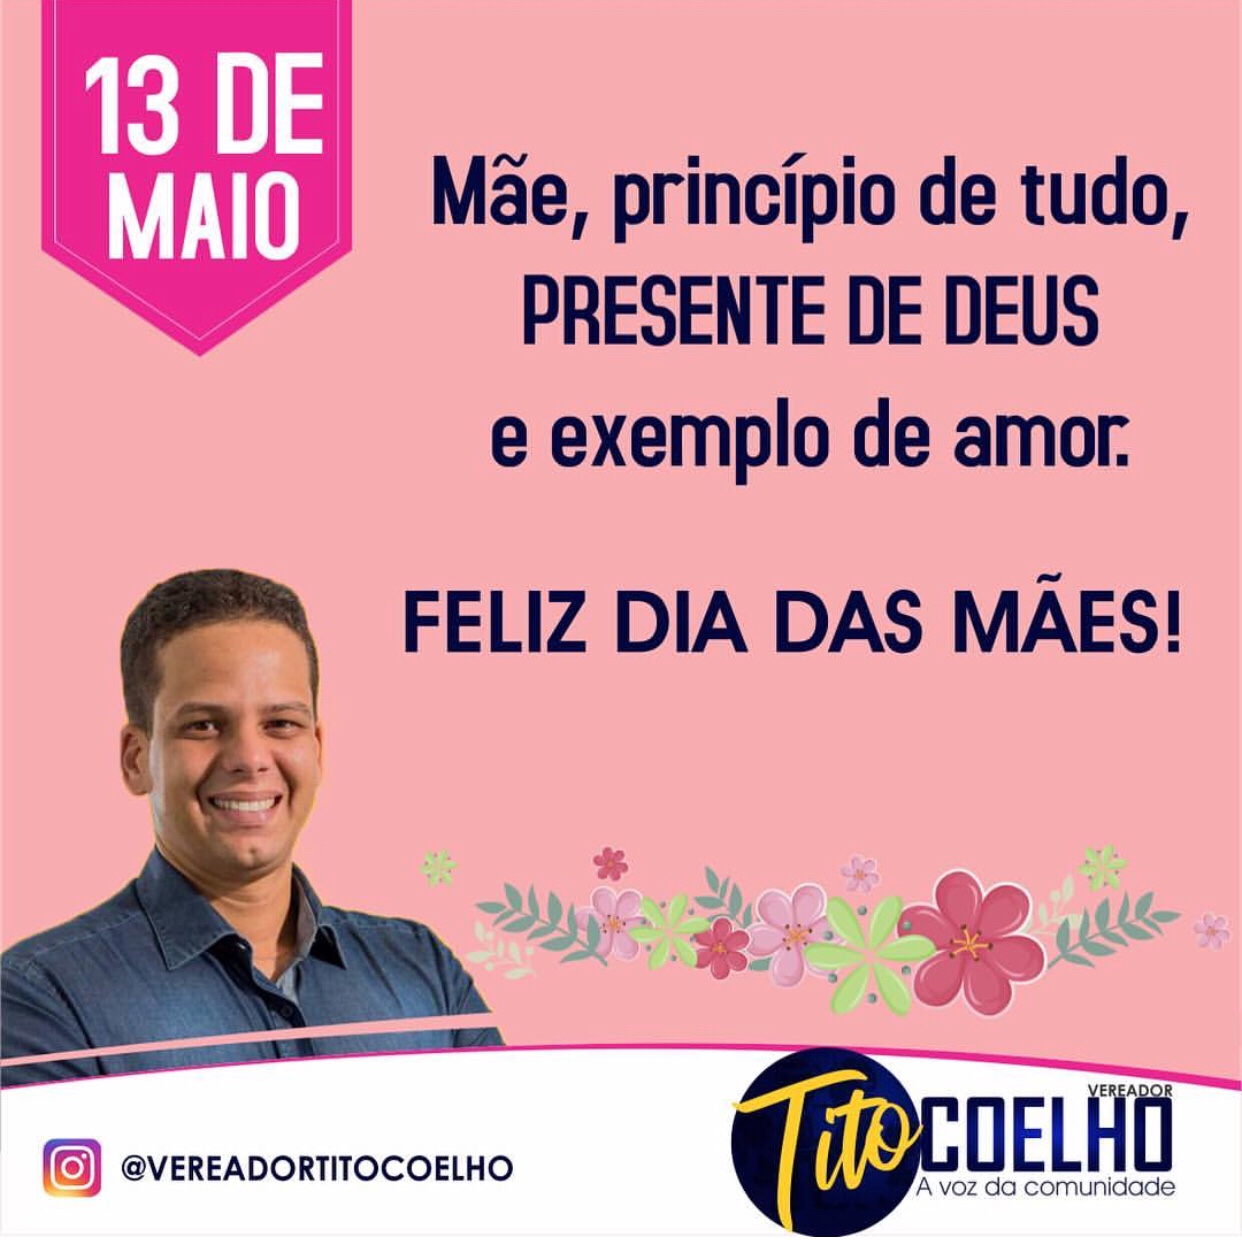  Vereador Tito Coelho deseja um Feliz dia das Mães!